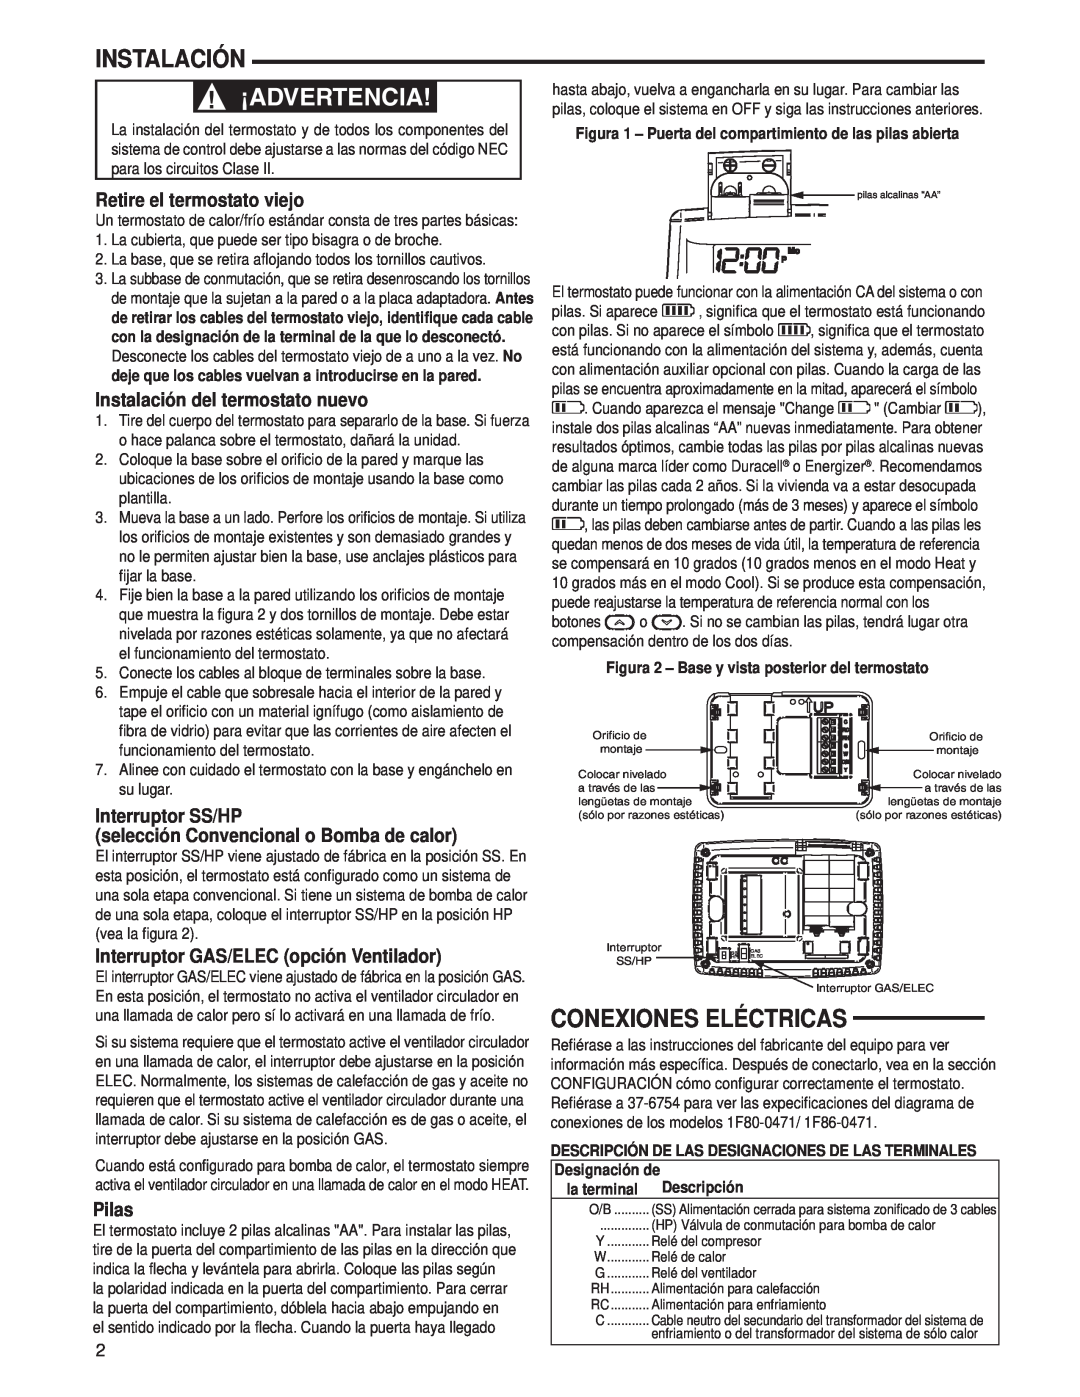 Technics 1F80-0471 Conexiones Eléctricas, Retire el termostato viejo, Instalación del termostato nuevo, Pilas 